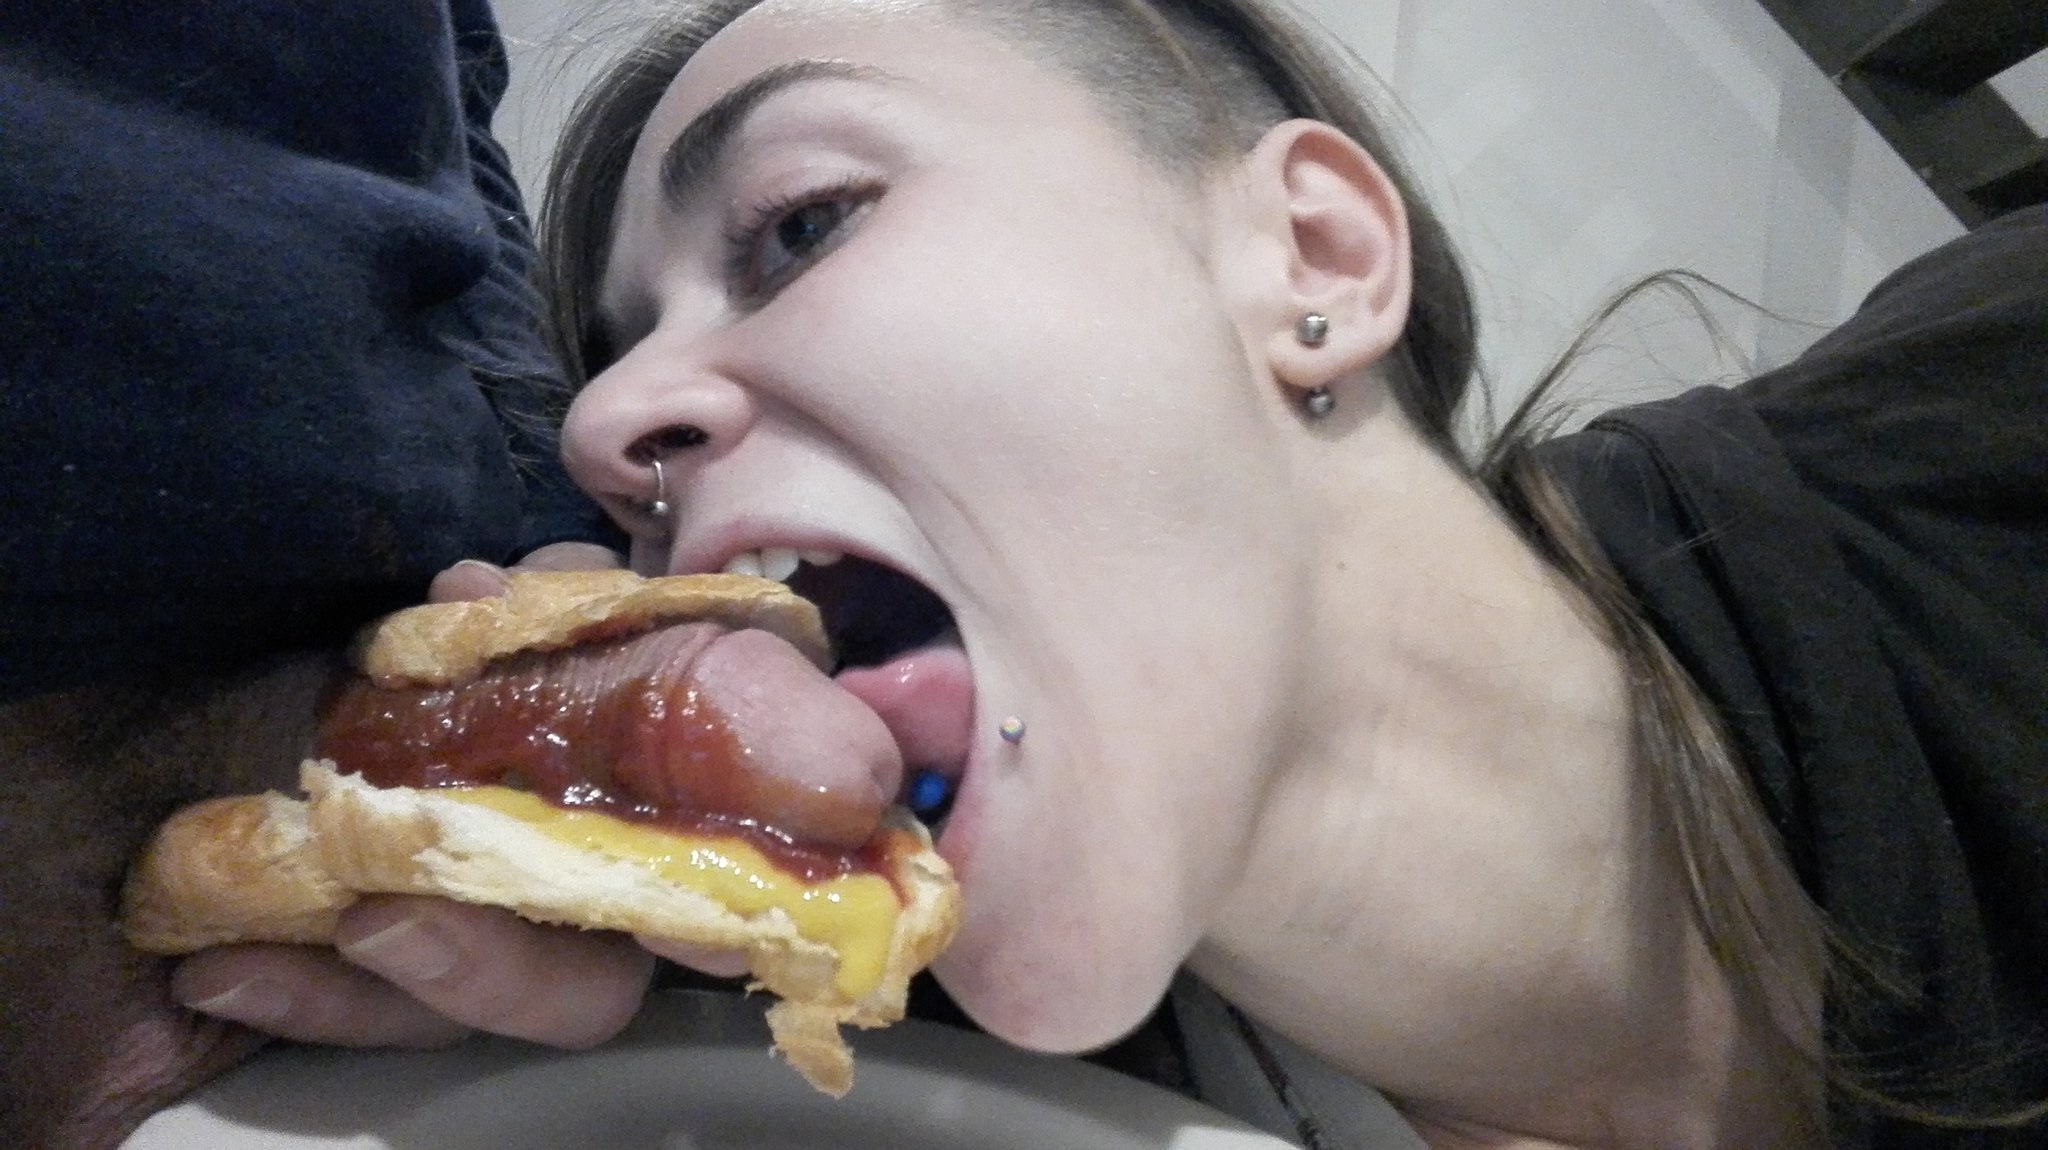 Enjoying Her Hotdog